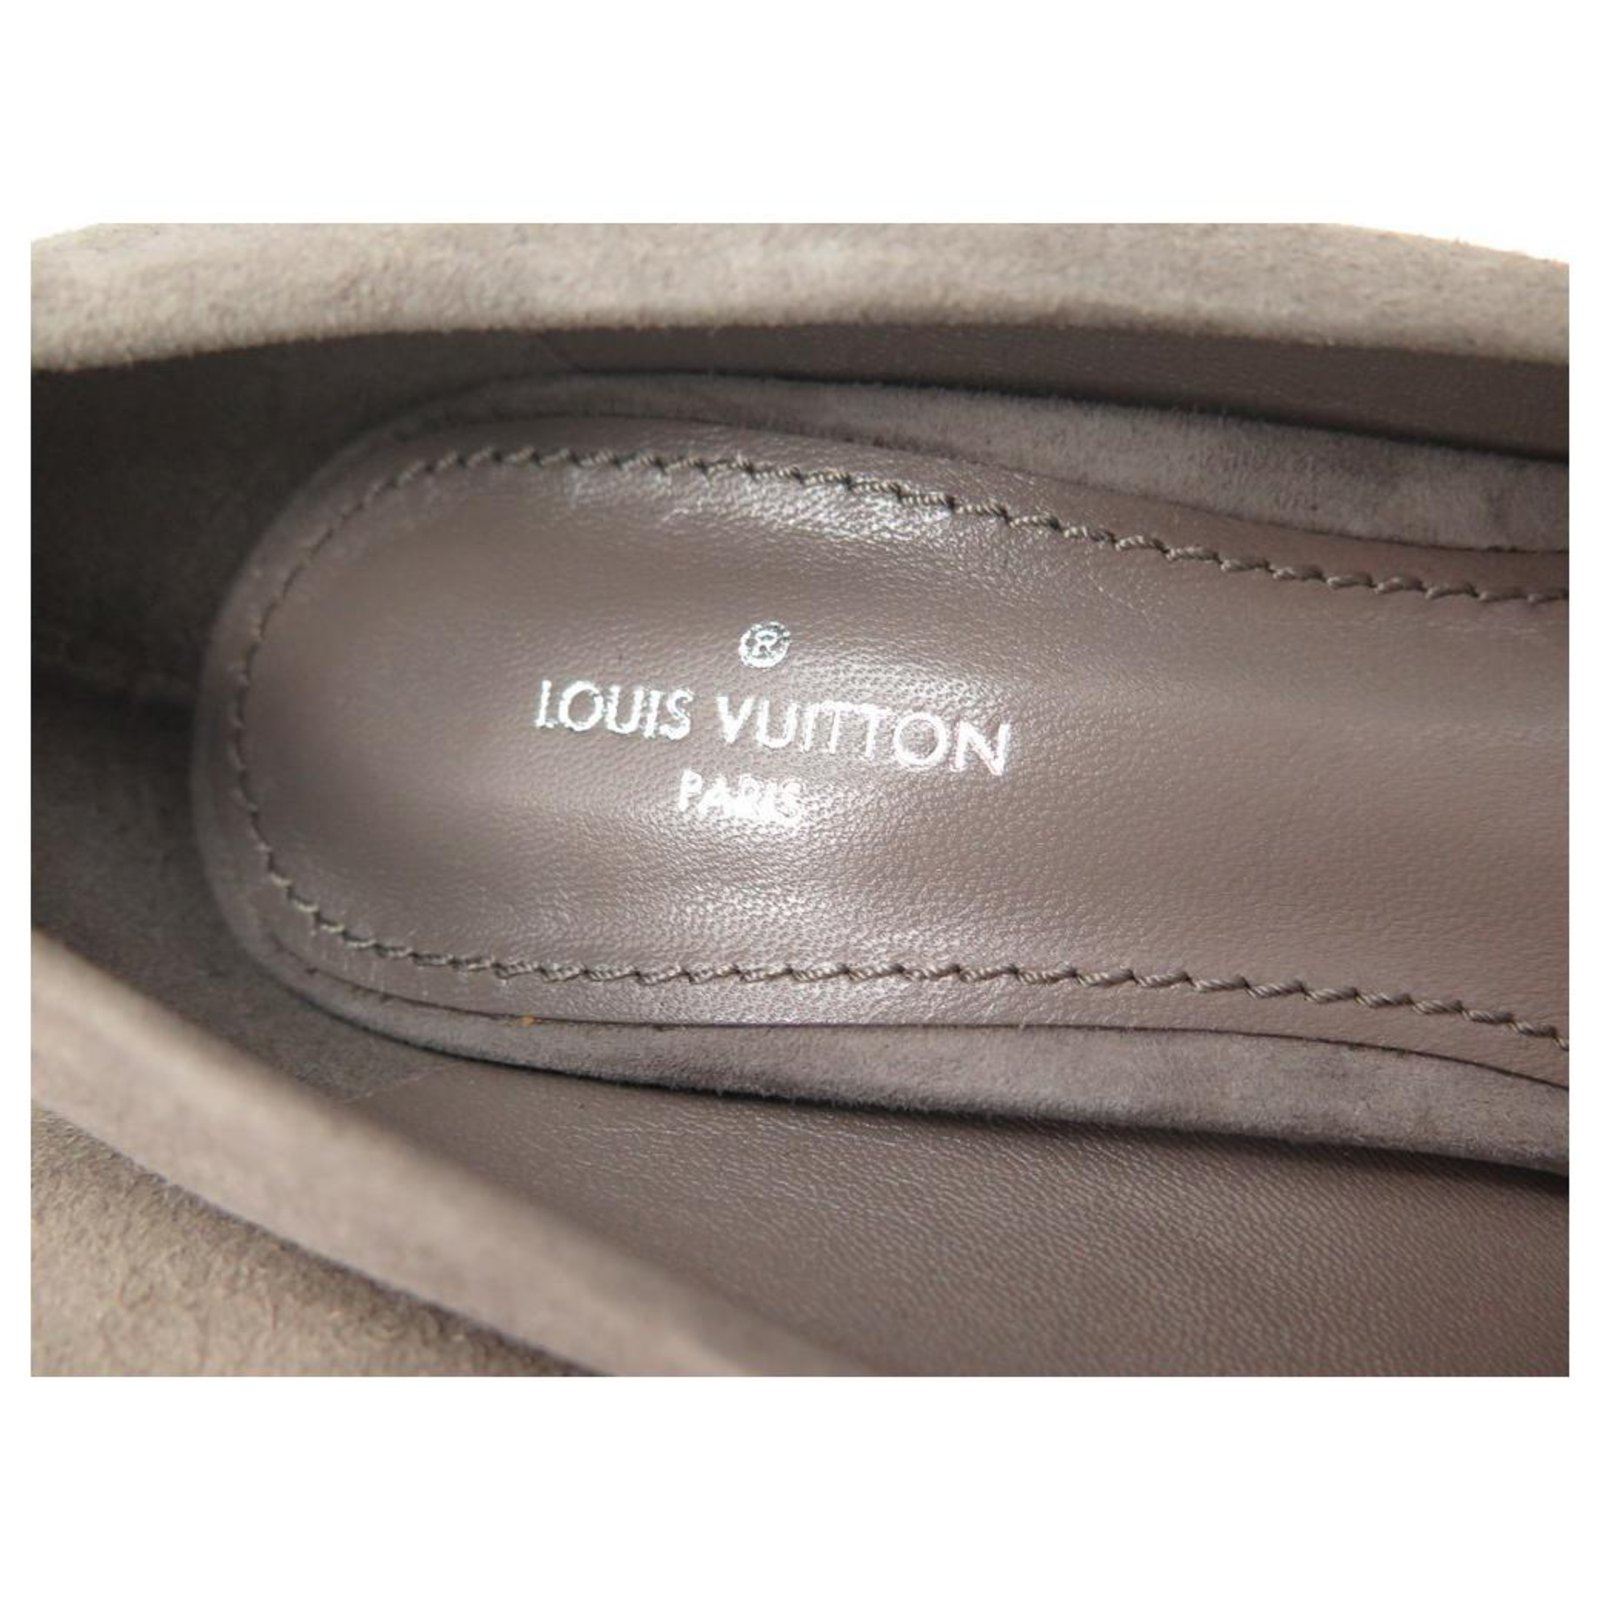 Louis Vuitton Rendez Vous Suede Leather pumps black